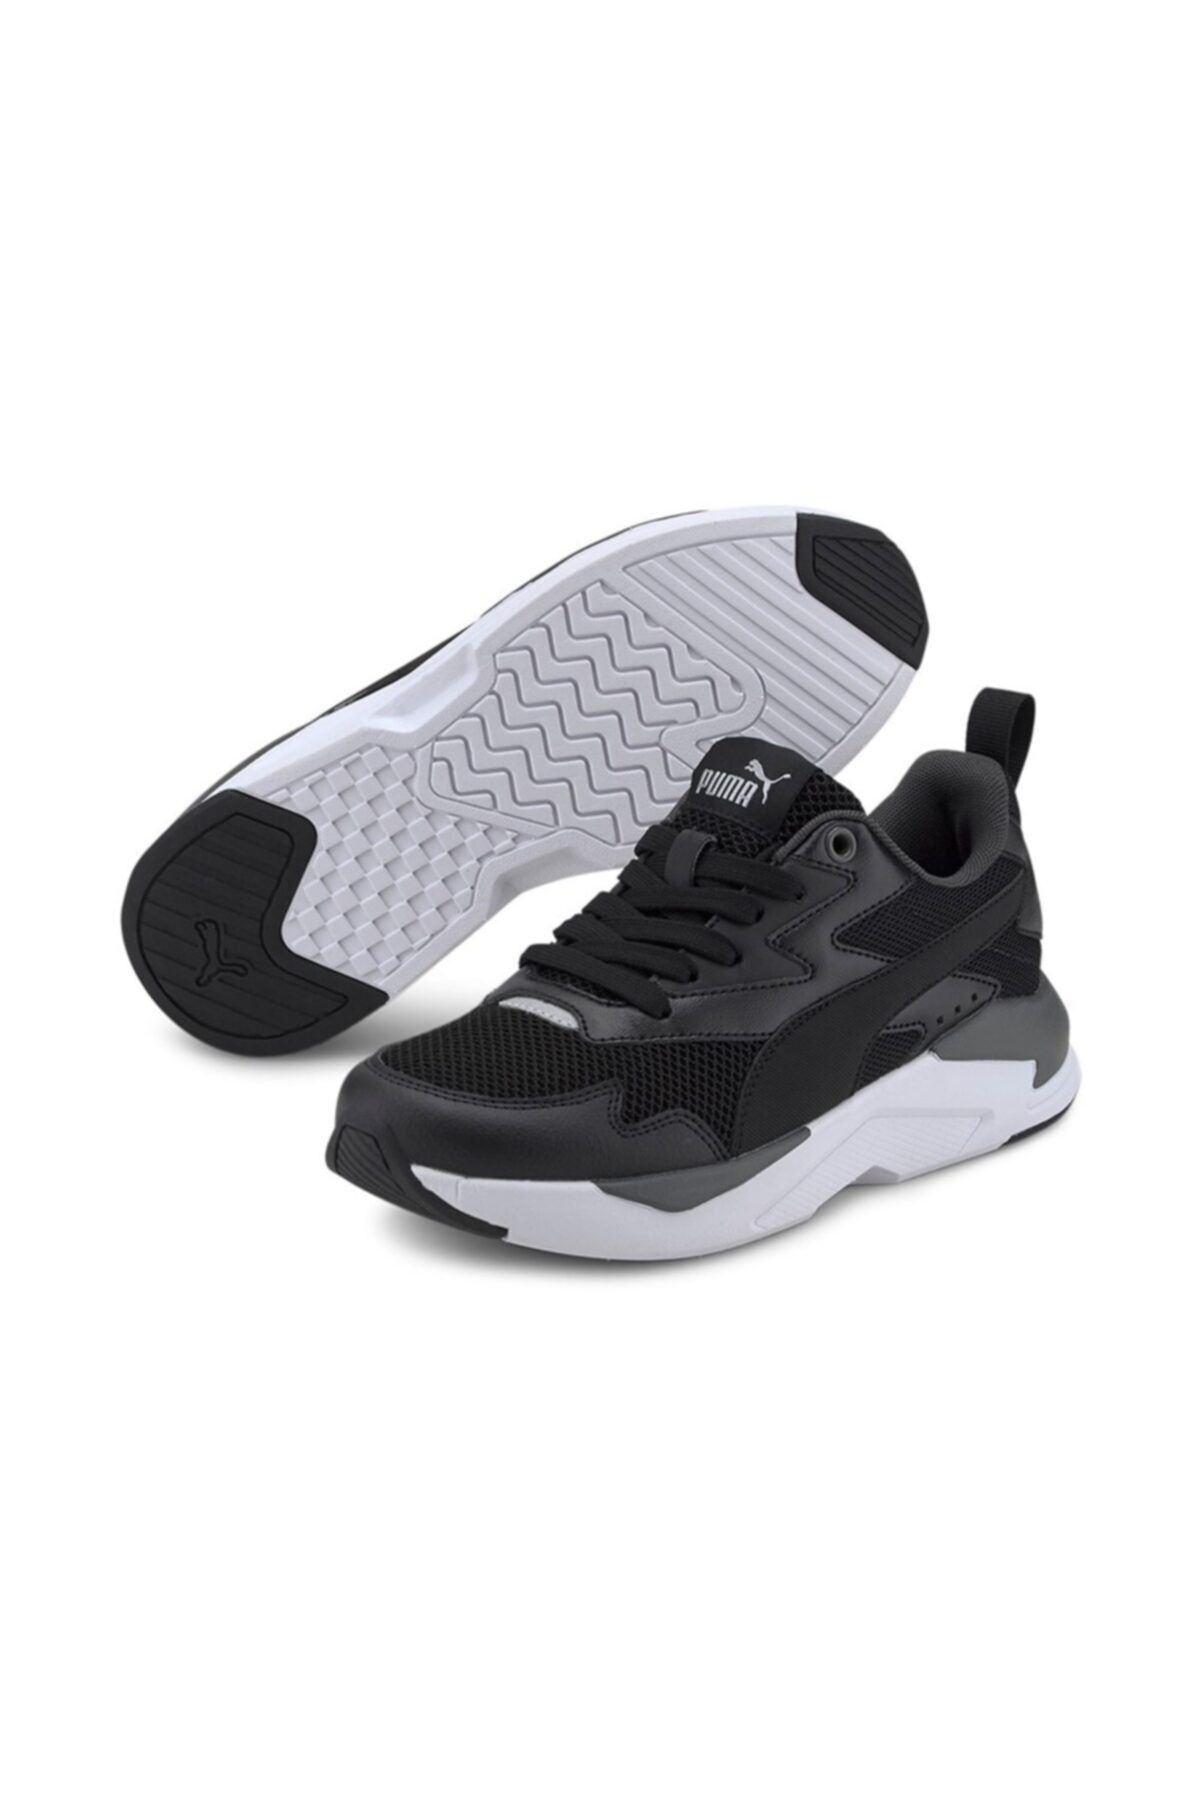 Puma X-RAY LITE JR Siyah Erkek Çocuk Sneaker Ayakkabı 101085492